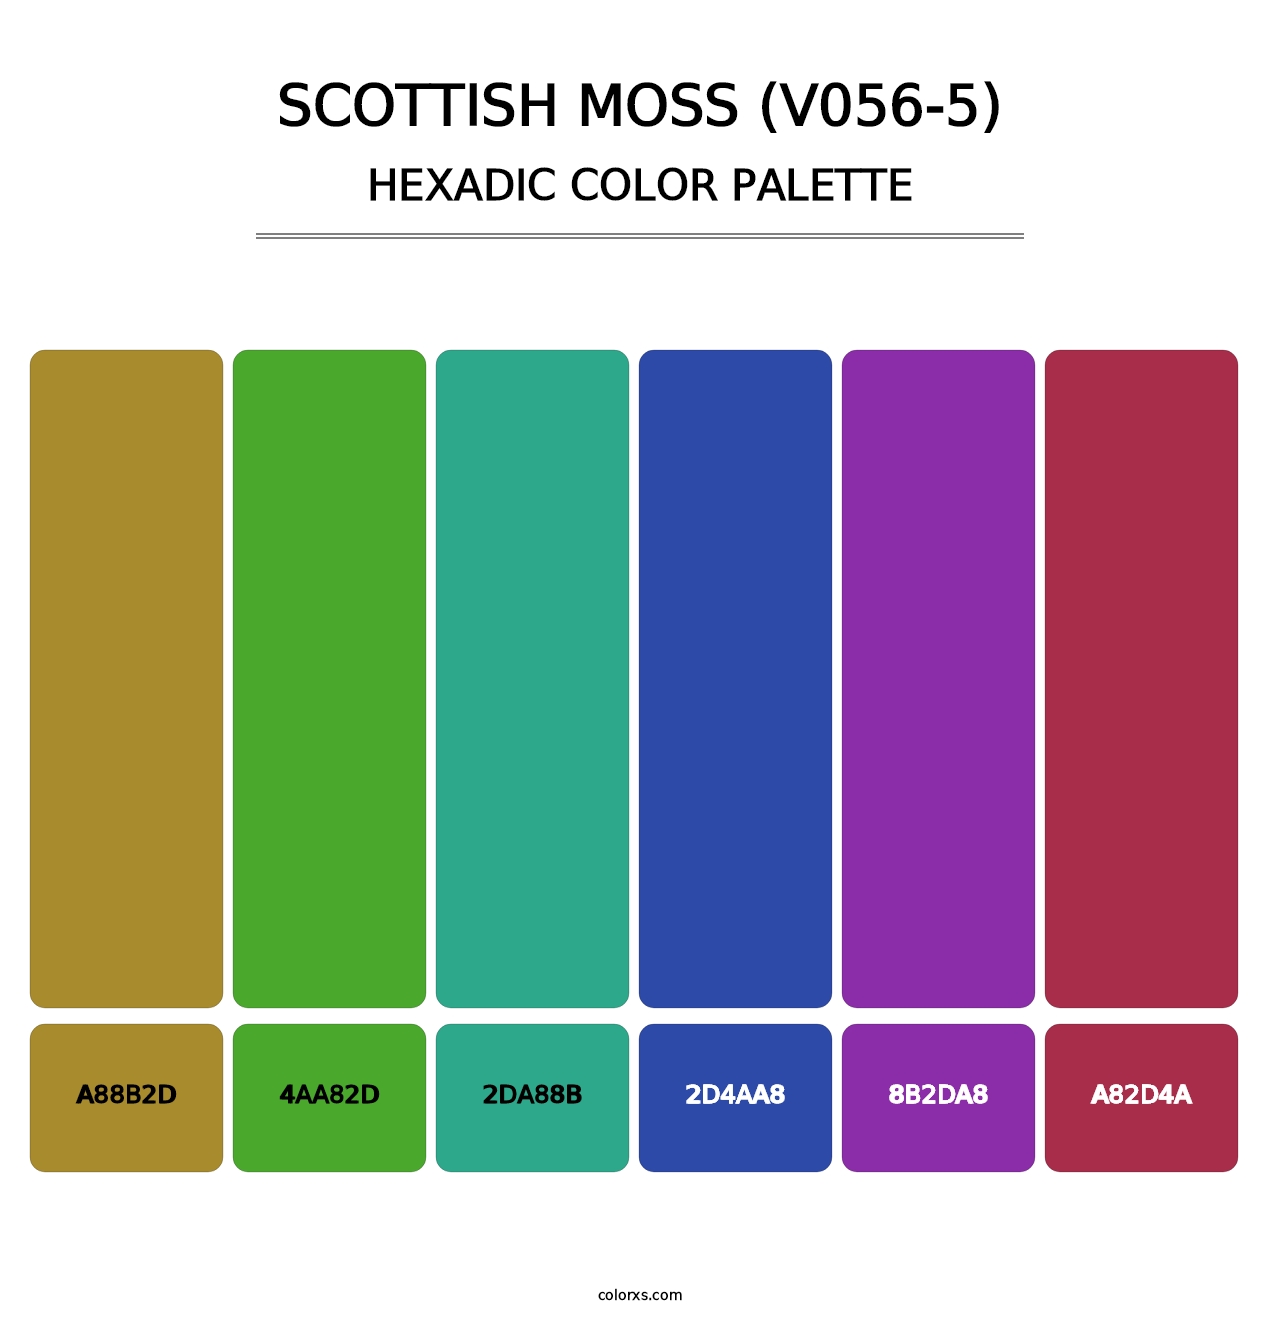 Scottish Moss (V056-5) - Hexadic Color Palette